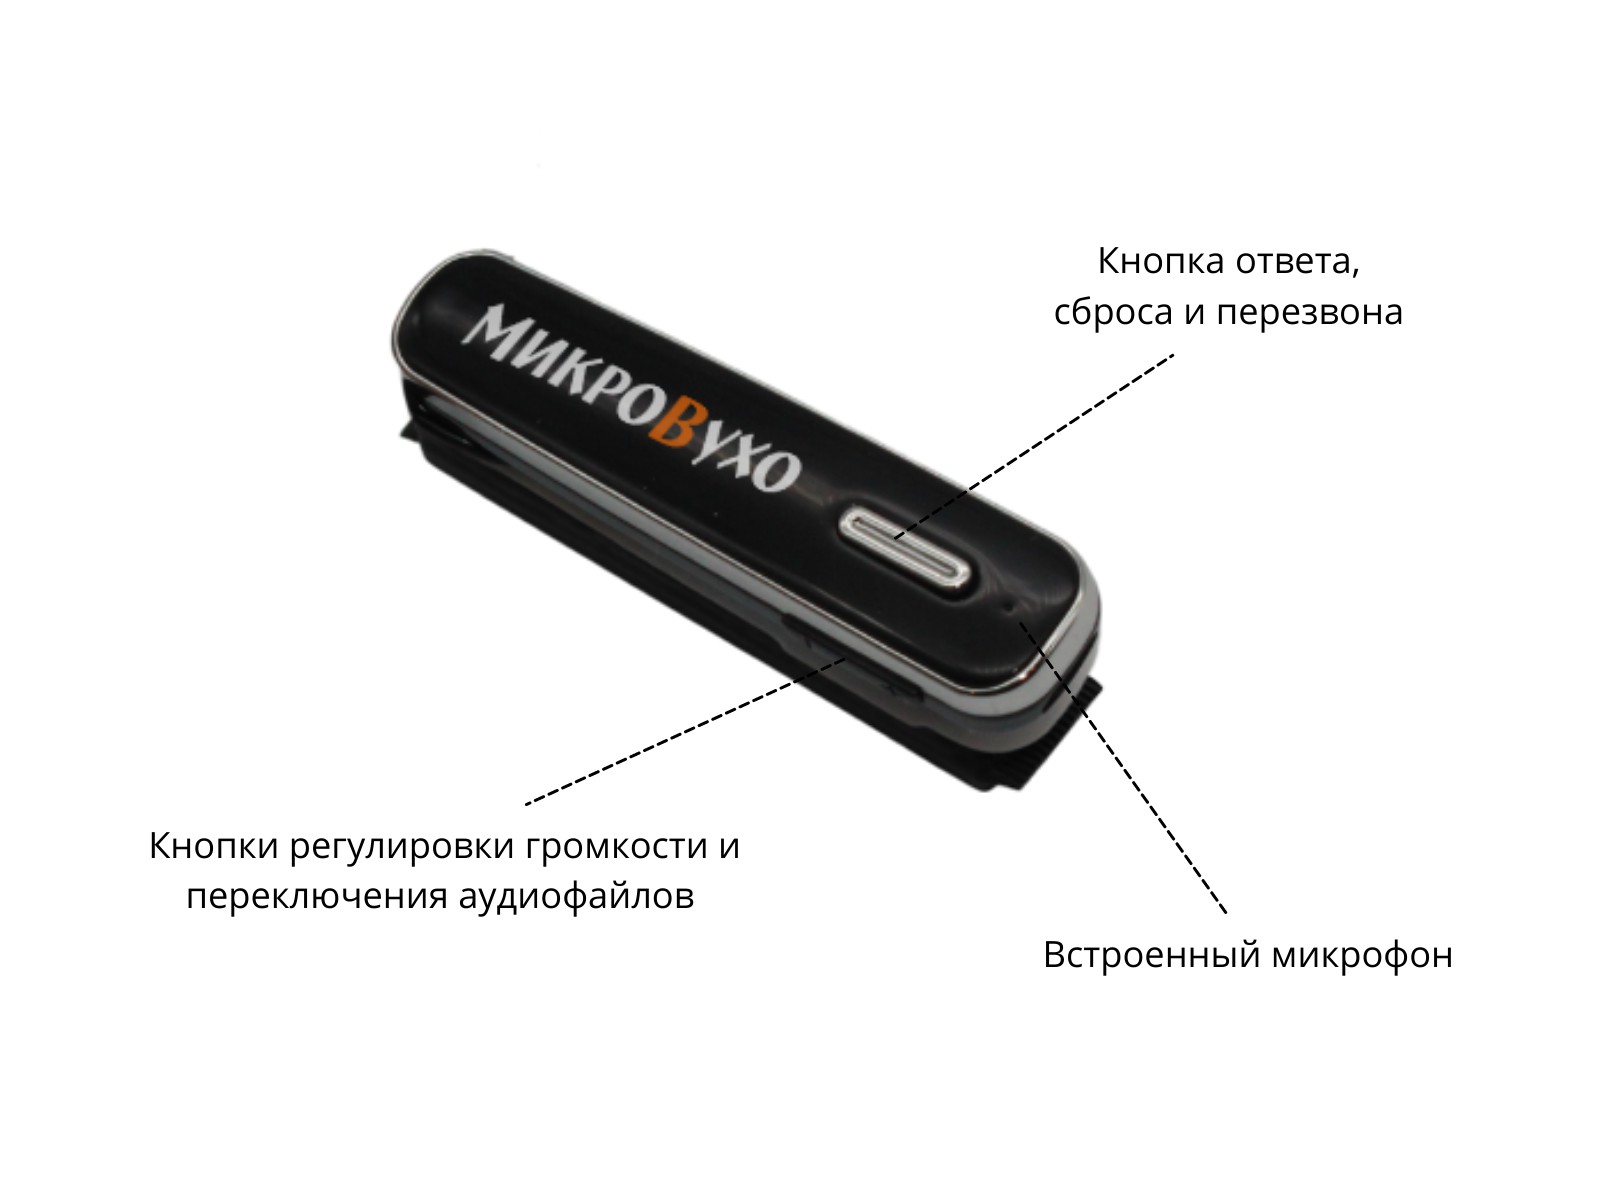 Универсальная гарнитура Bluetooth Box Premier Lite Plus с капсулой Nano 4 мм и магнитами 2 мм 3